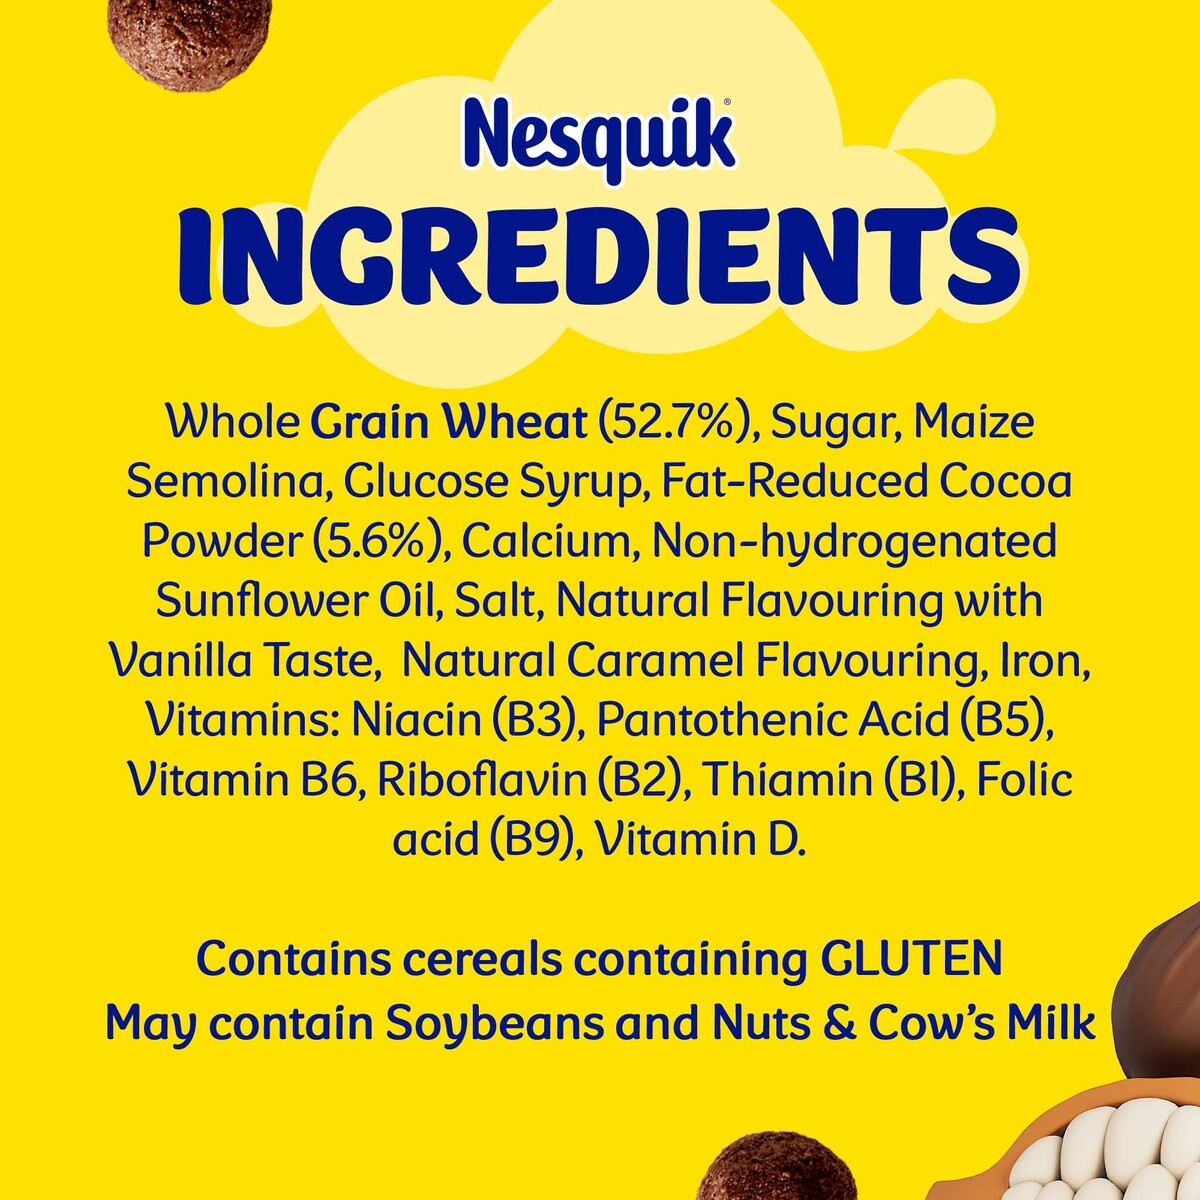 Nestle Nesquik Chocolate Breakfast Cereal Pack 500 g